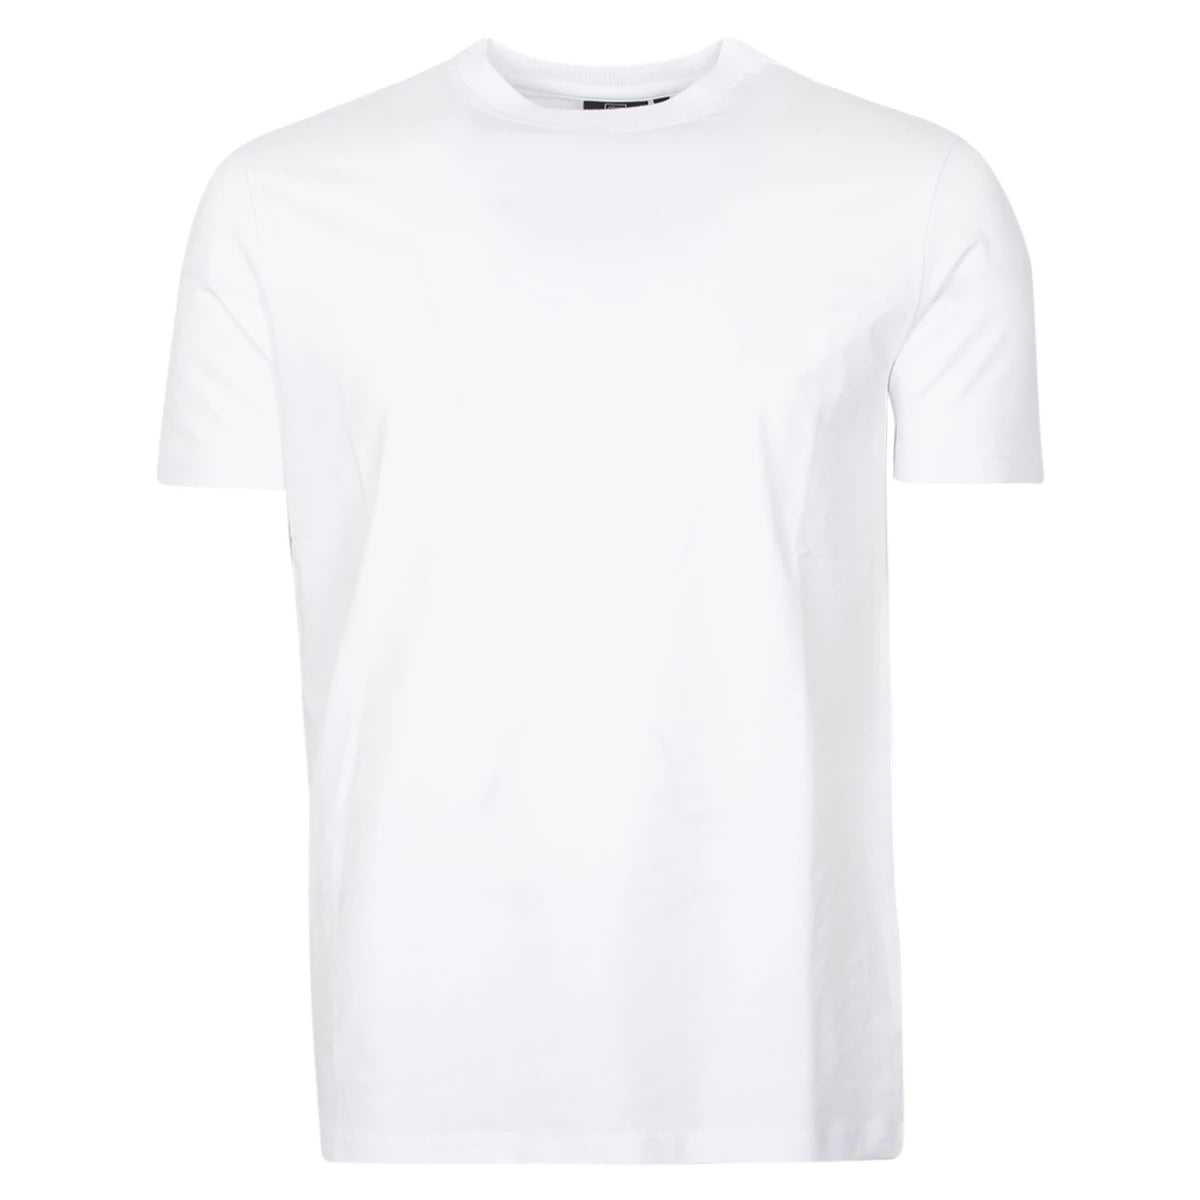 Genti T-shirt wit